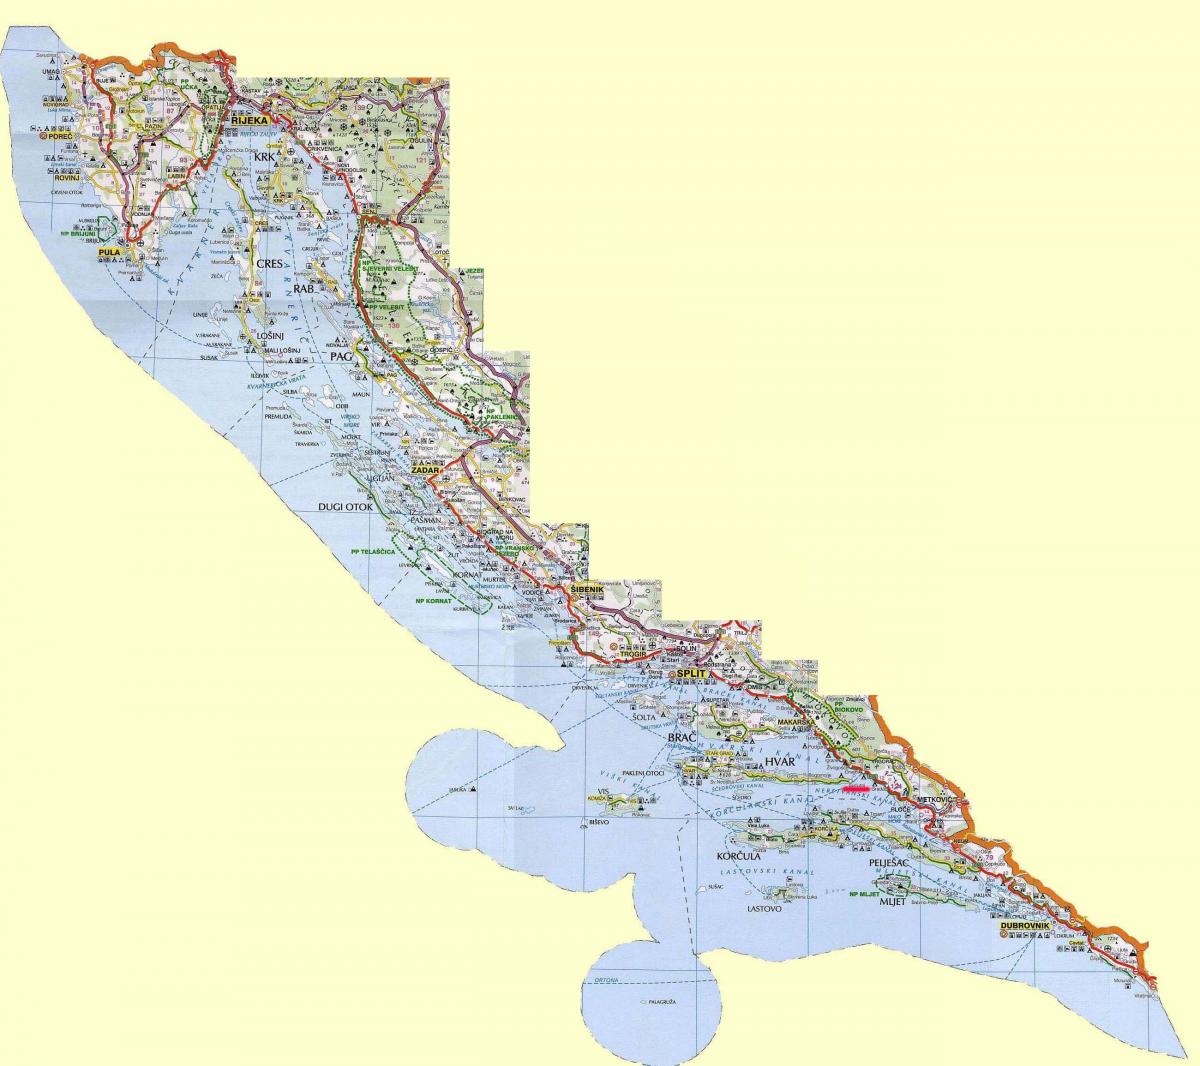 karta hrvatske obale i otoka